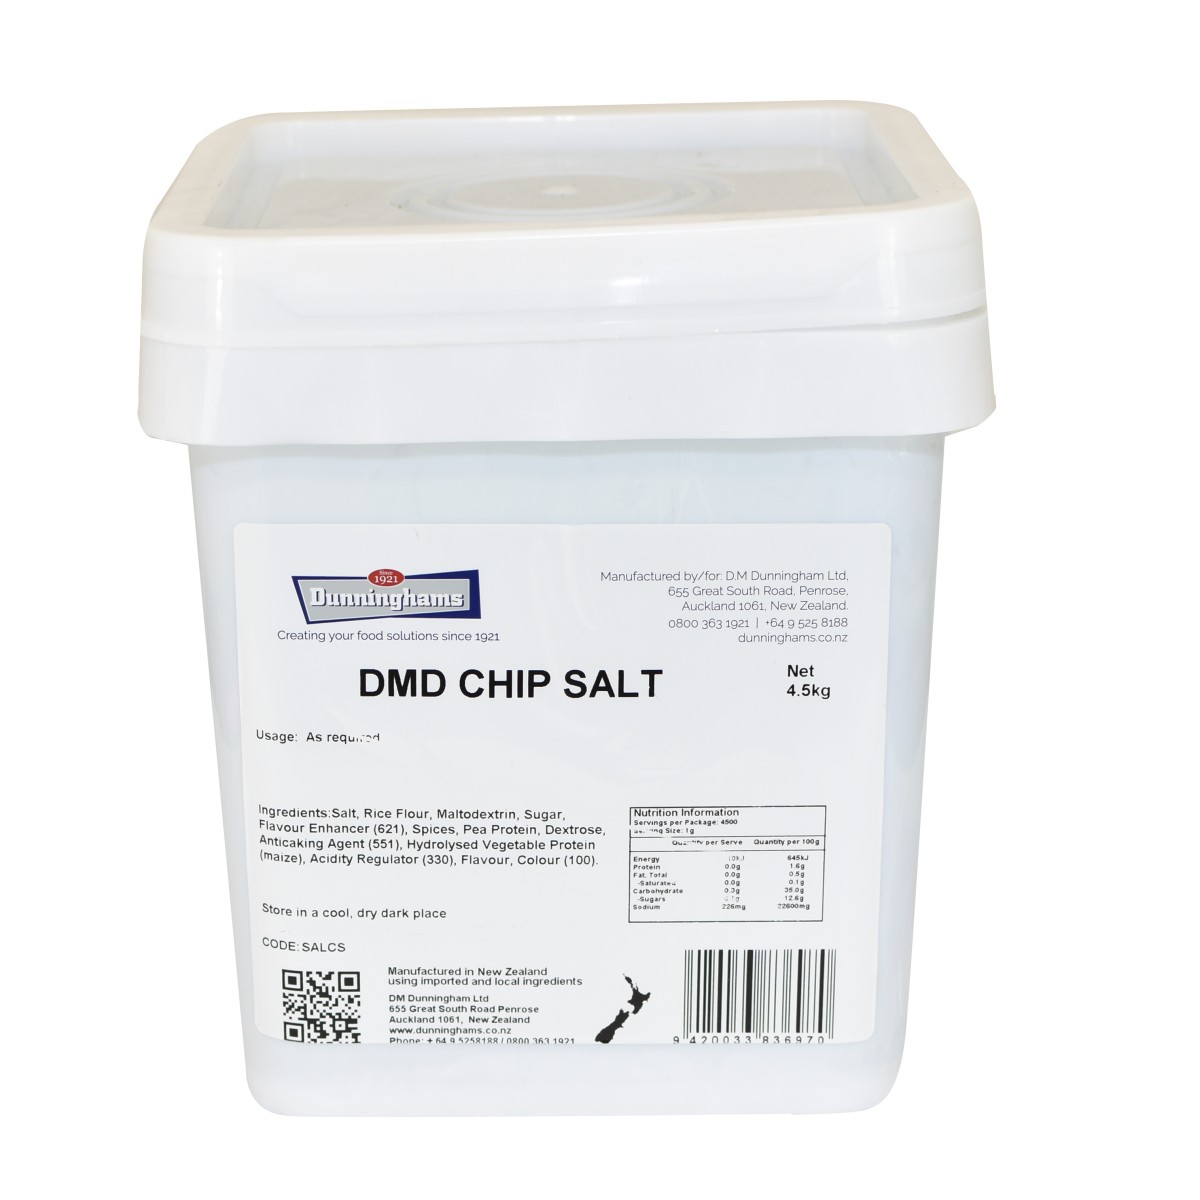 DMD CHIP SALT 4.5kg